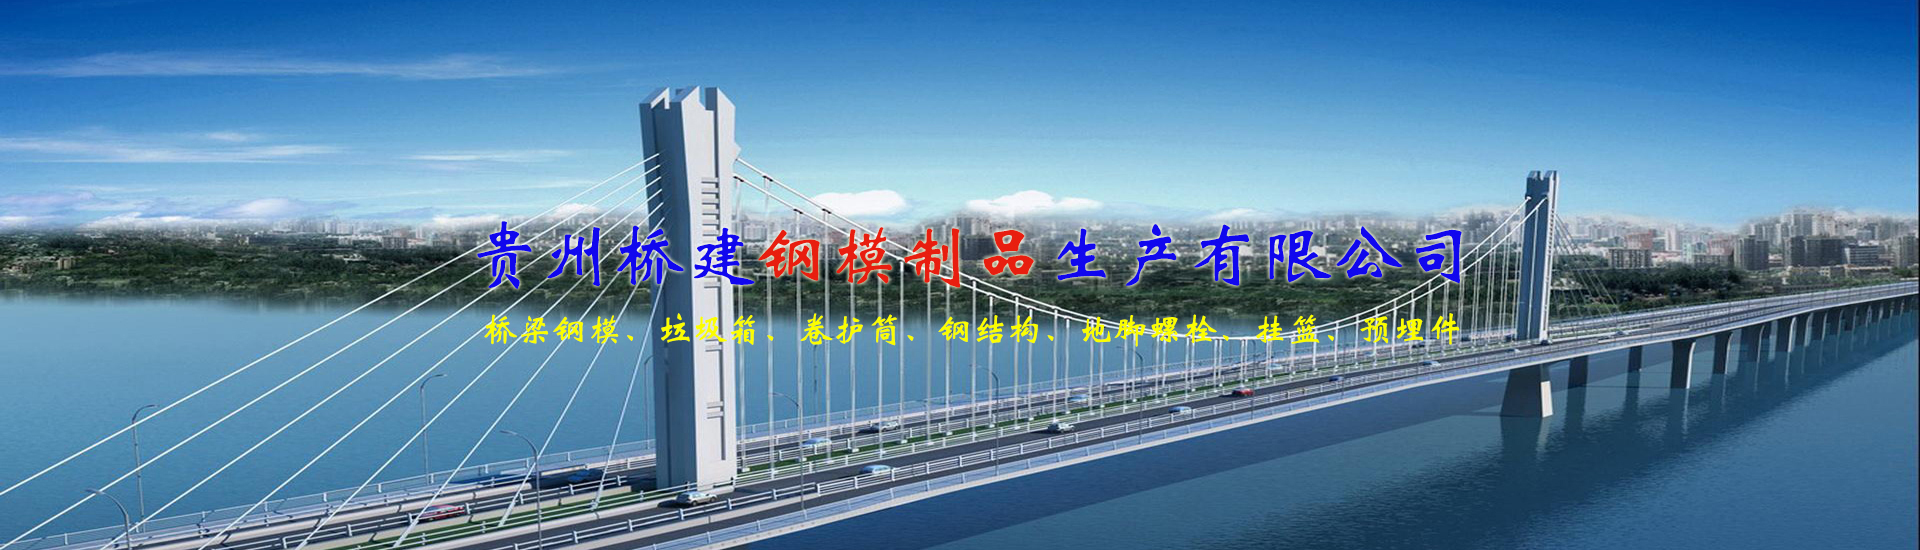 貴州橋建鋼模制品生產有限公司【官網】